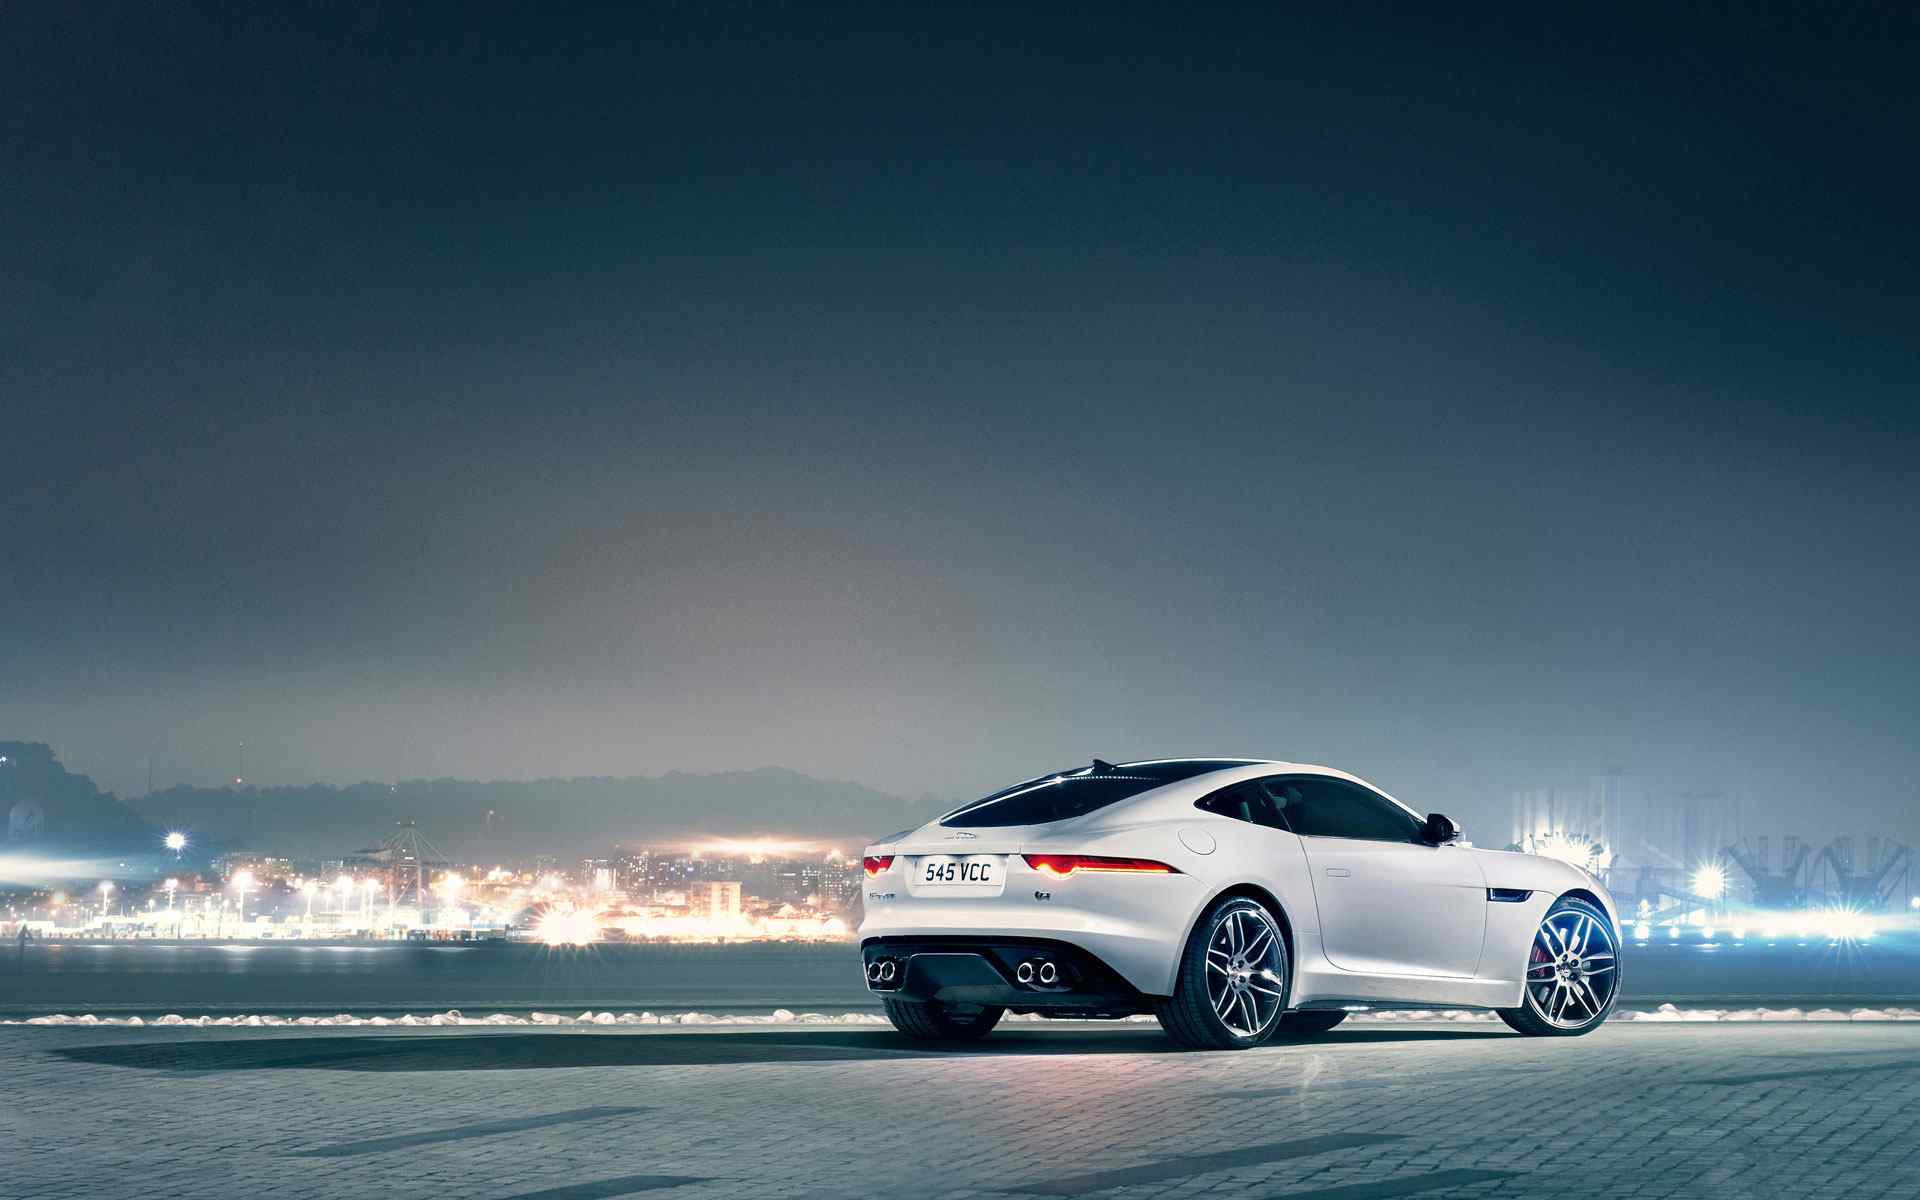 2014-jaguar捷豹白色轿跑车宝前角壁纸-欧莱凯设计网